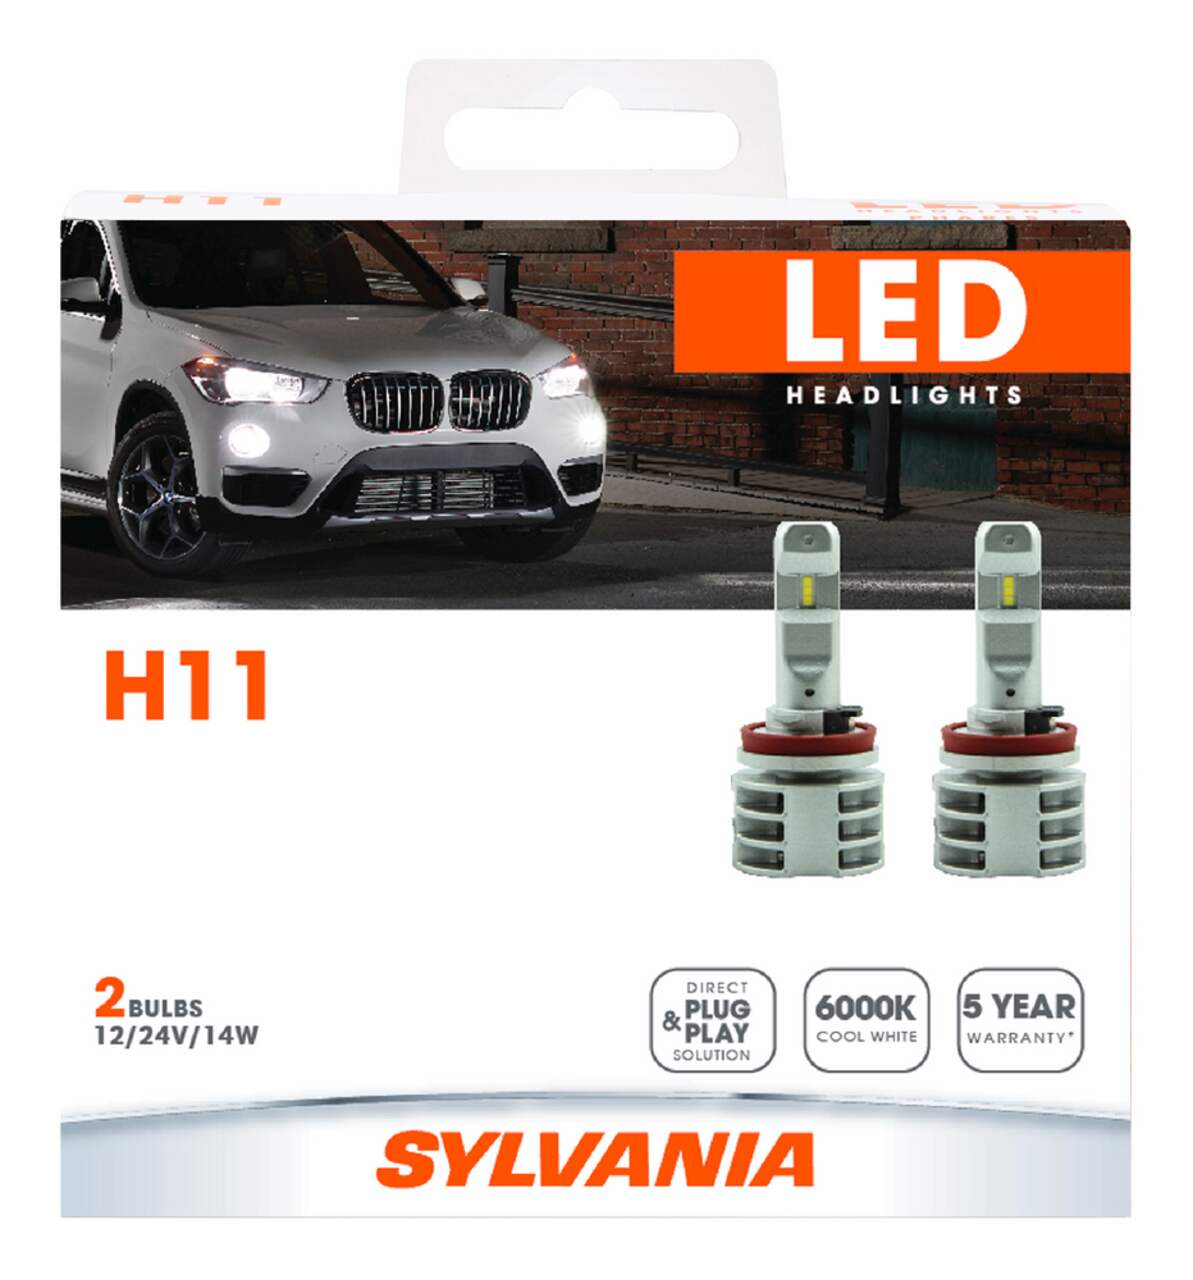 H11 Sylvania ZEVO® LED Headlight Bulb, 6000k Cool White Light, 2-pk